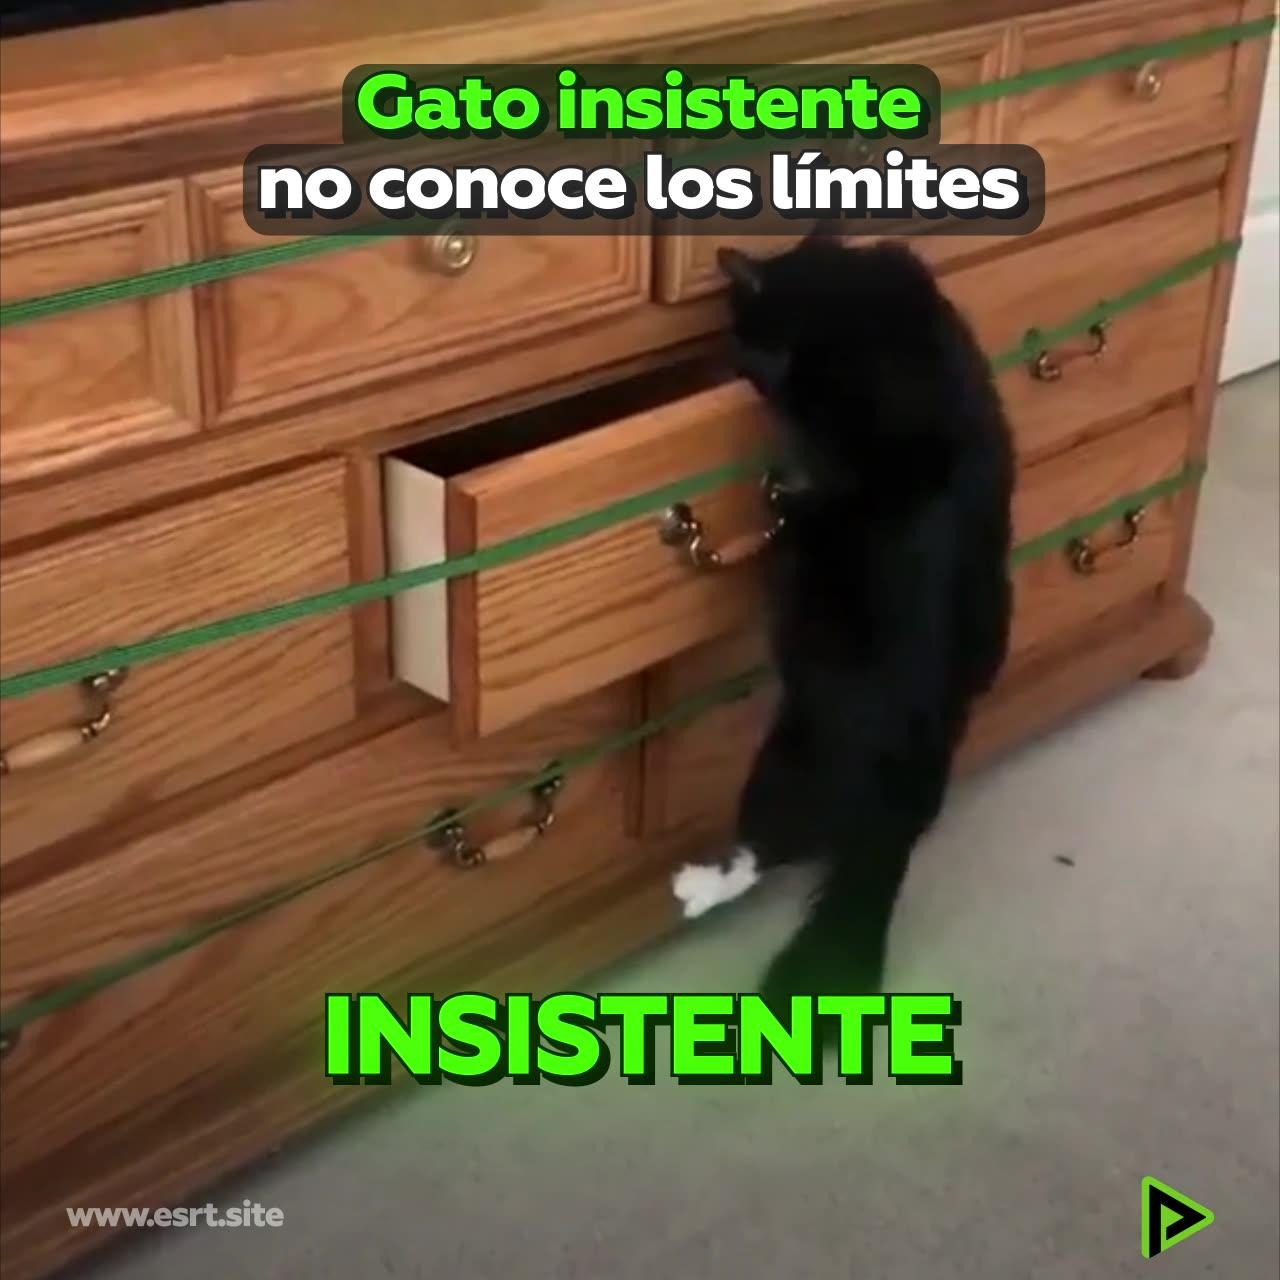 Gato insistente no conoce la frase “no puedo”